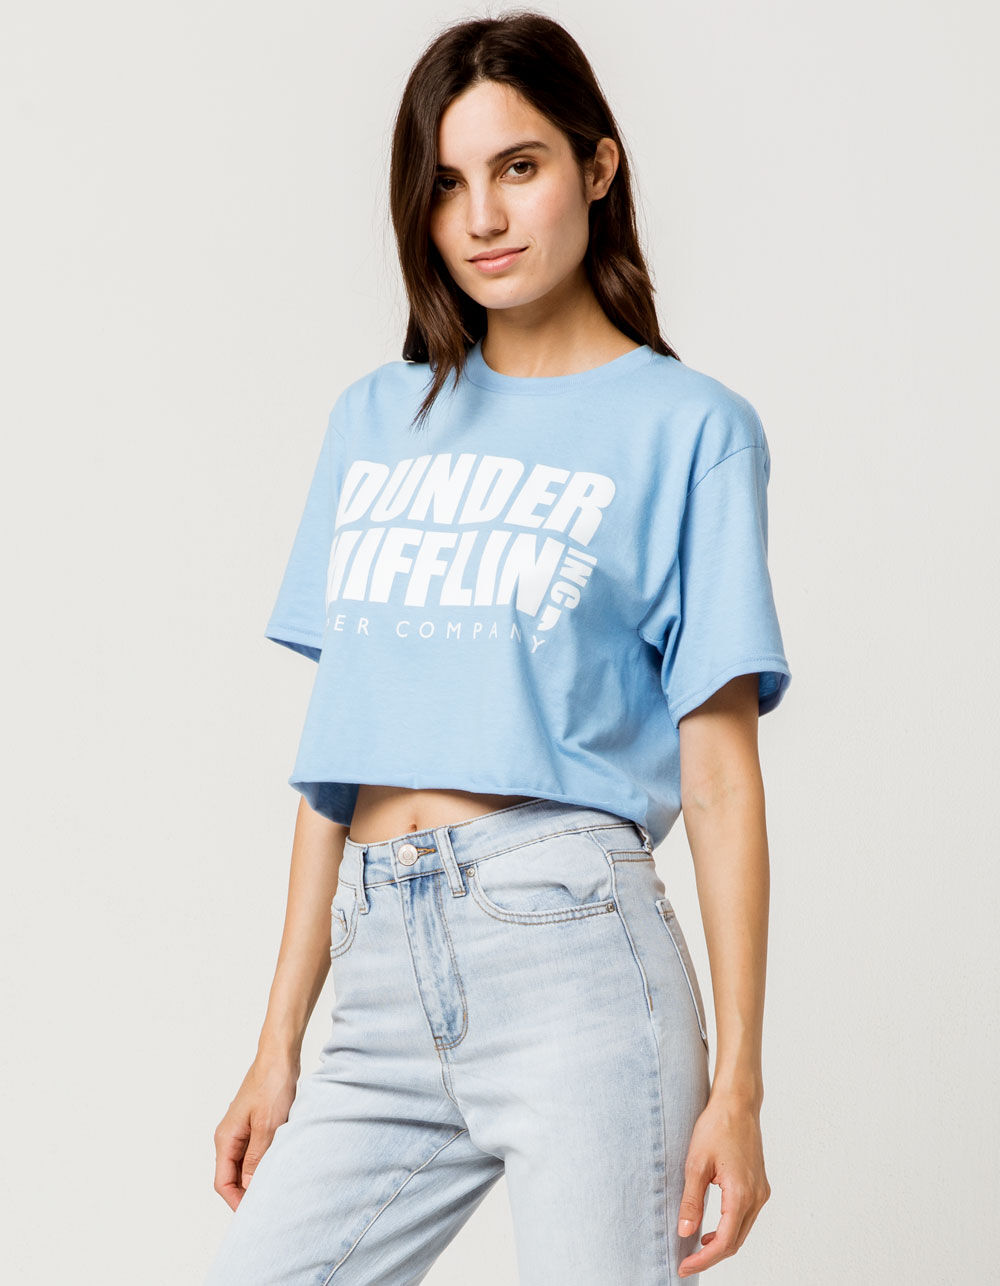 Dunder Mifflin Paper Company Shirt - Trends Bedding